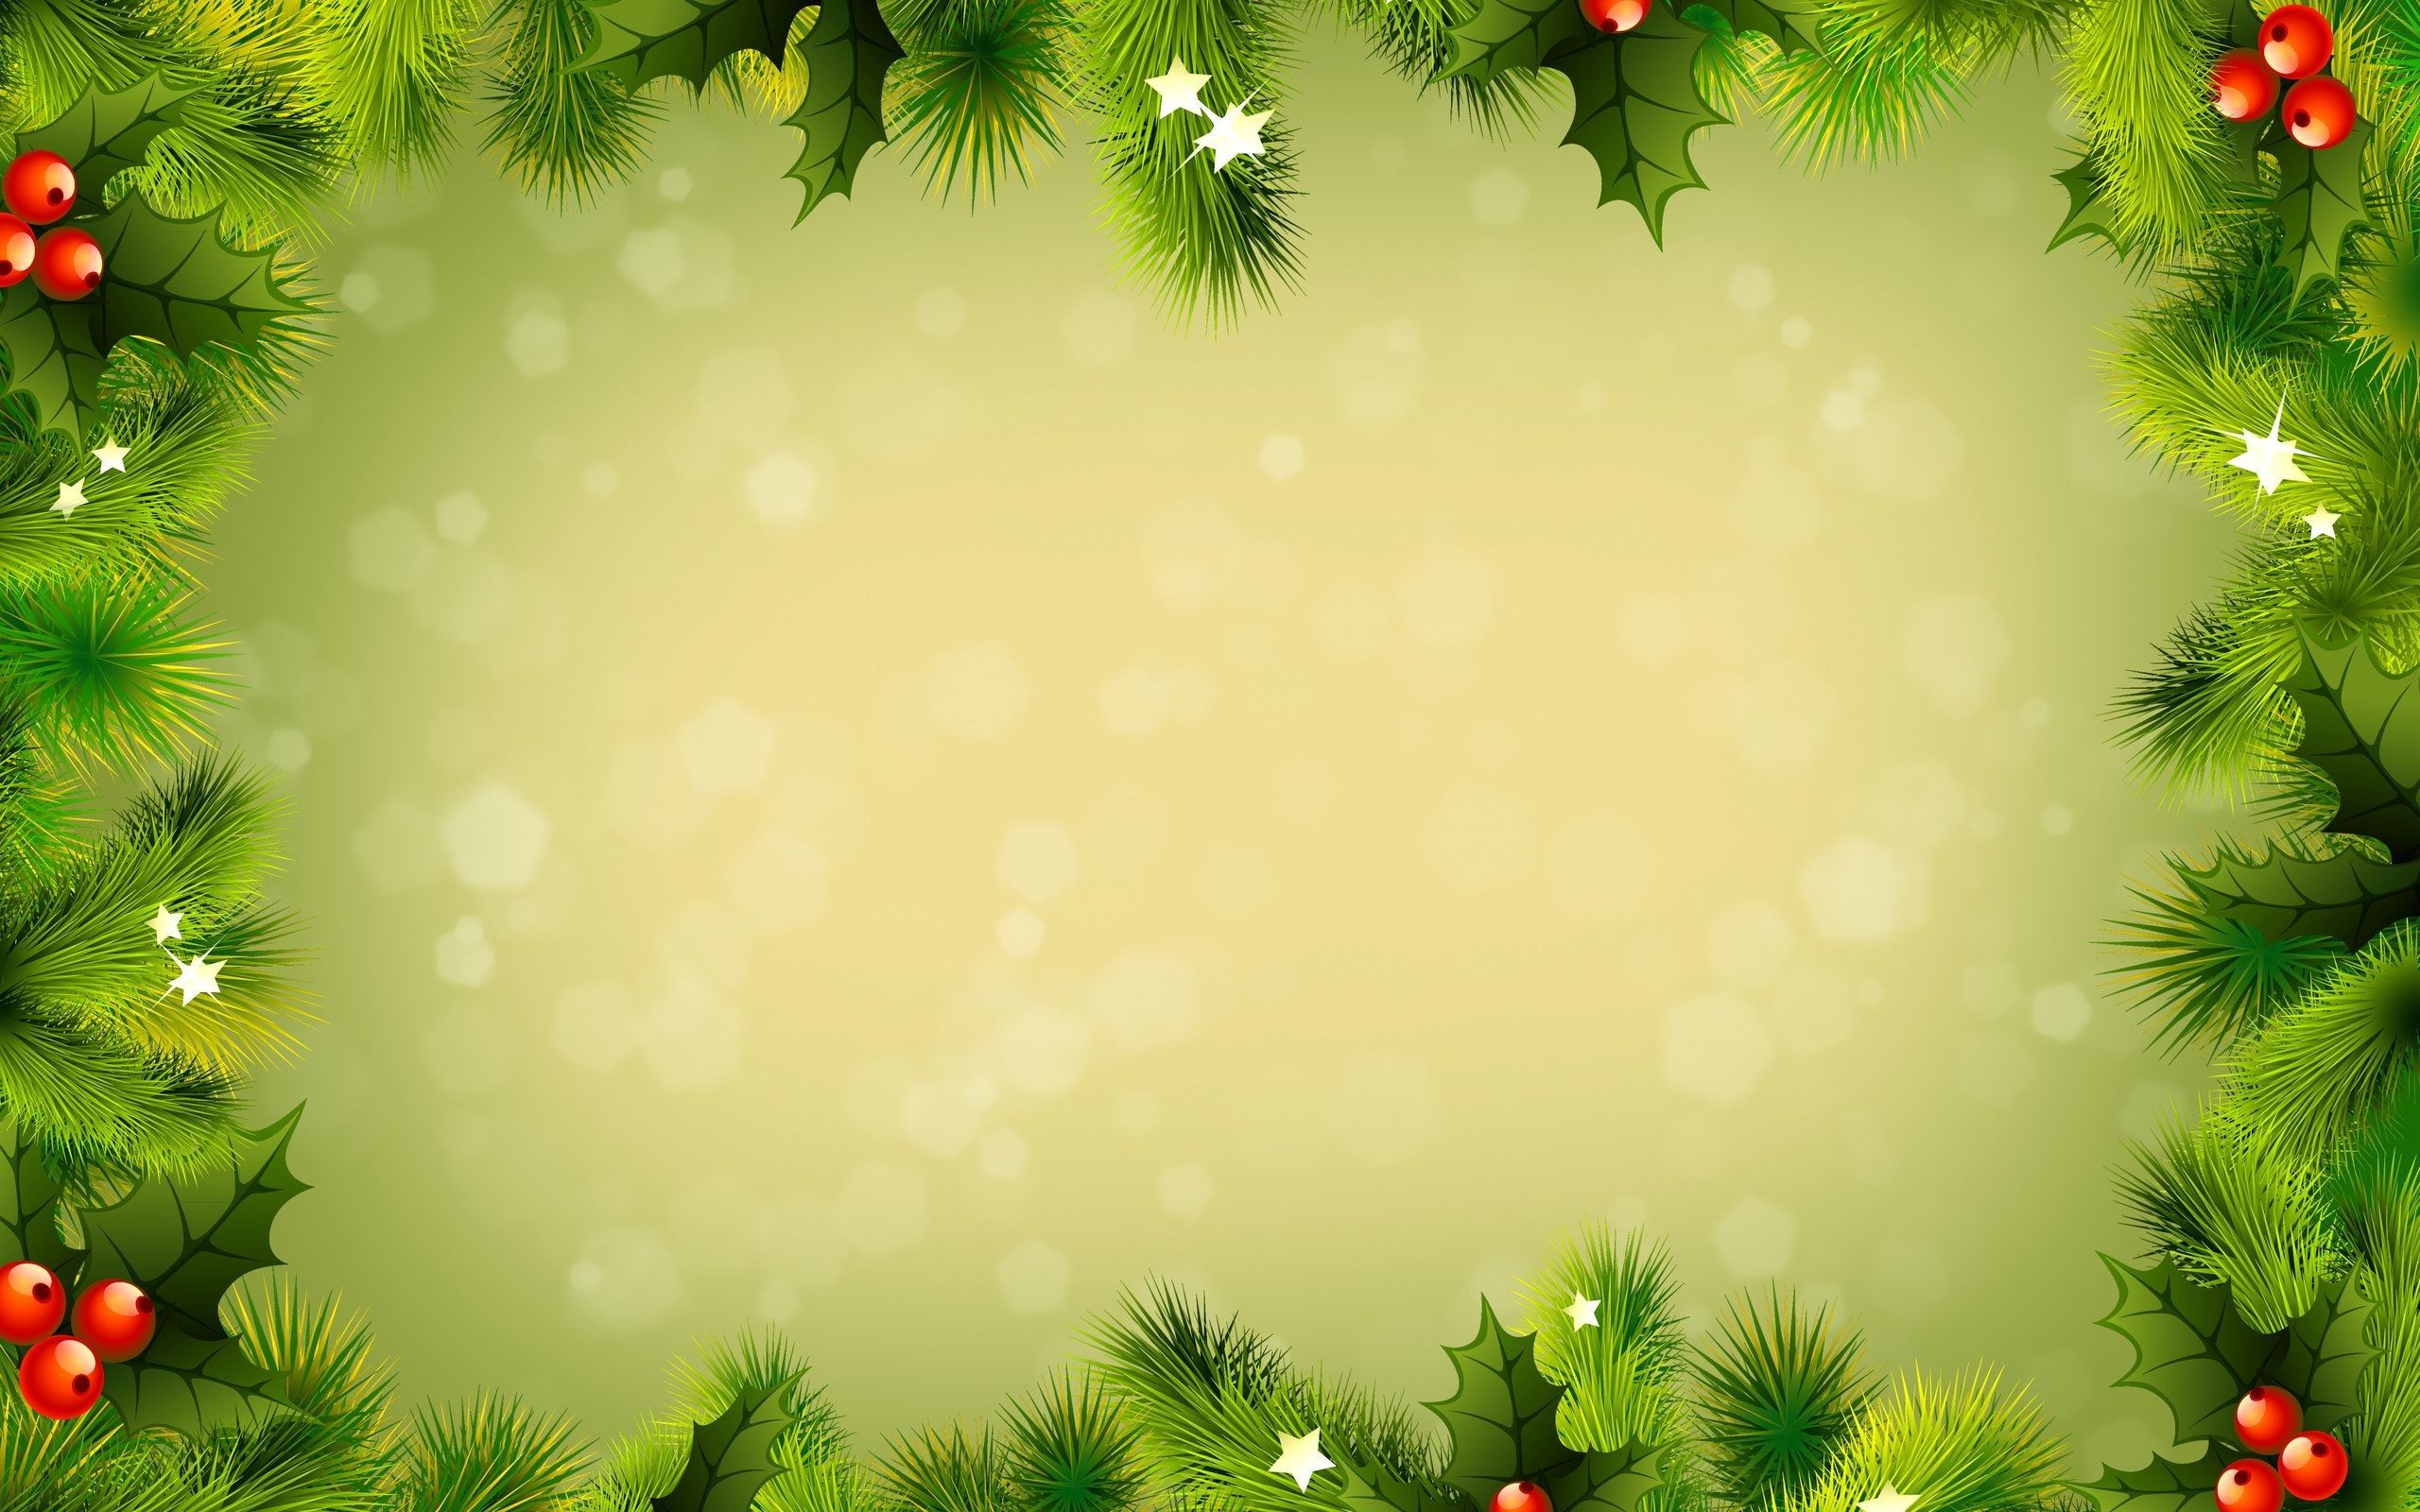 christmas background Large Image. Christmas wallpaper background, Christmas wallpaper hd, Christmas background